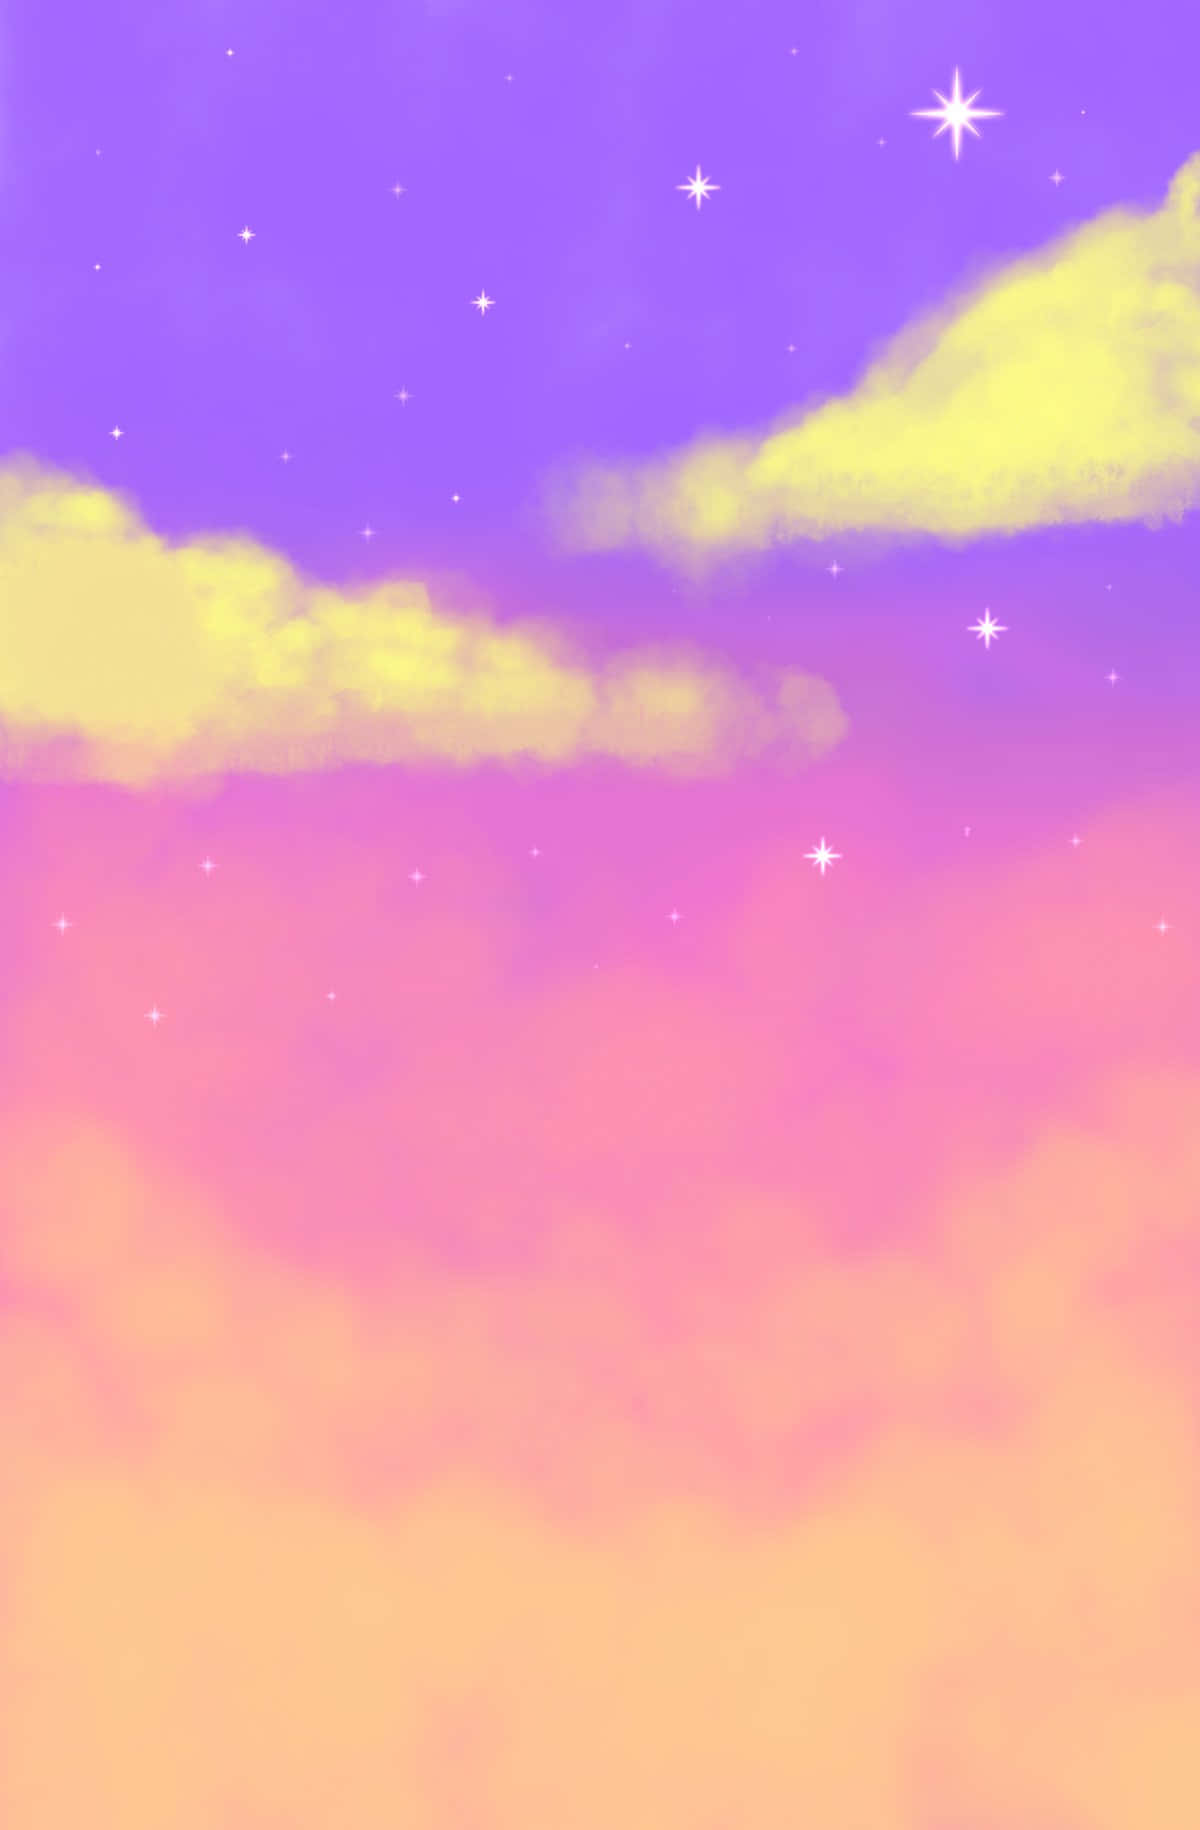 Profilbildmagischer Pink- Und Lilafarbener Himmel-hintergrund